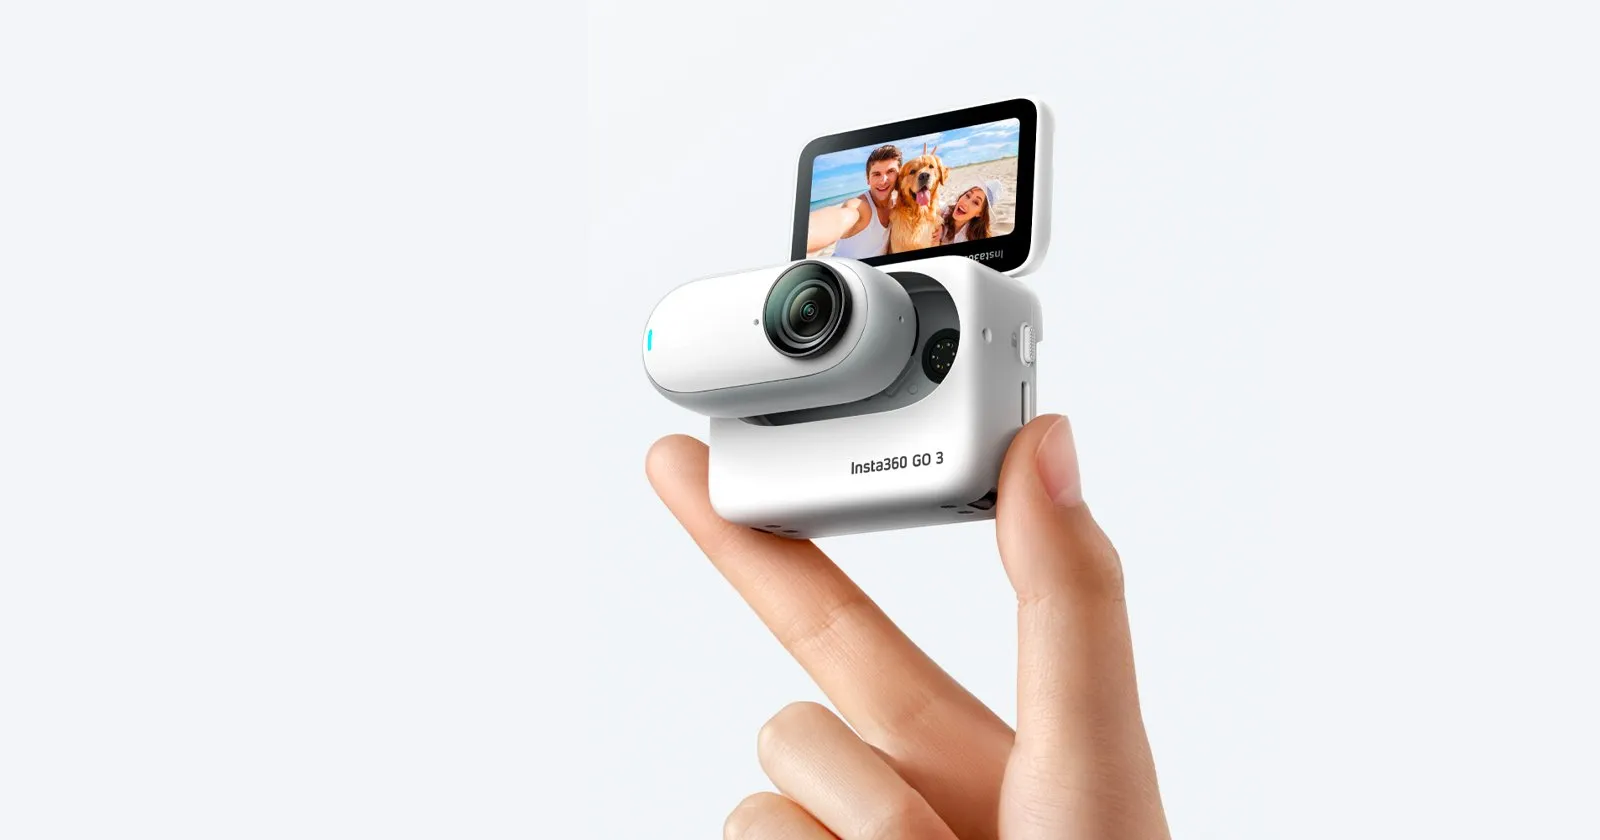 Insta360 ra mắt camera hành trình Insta360 GO 3 nhỏ gọn cùng phụ kiện Action Pod mới